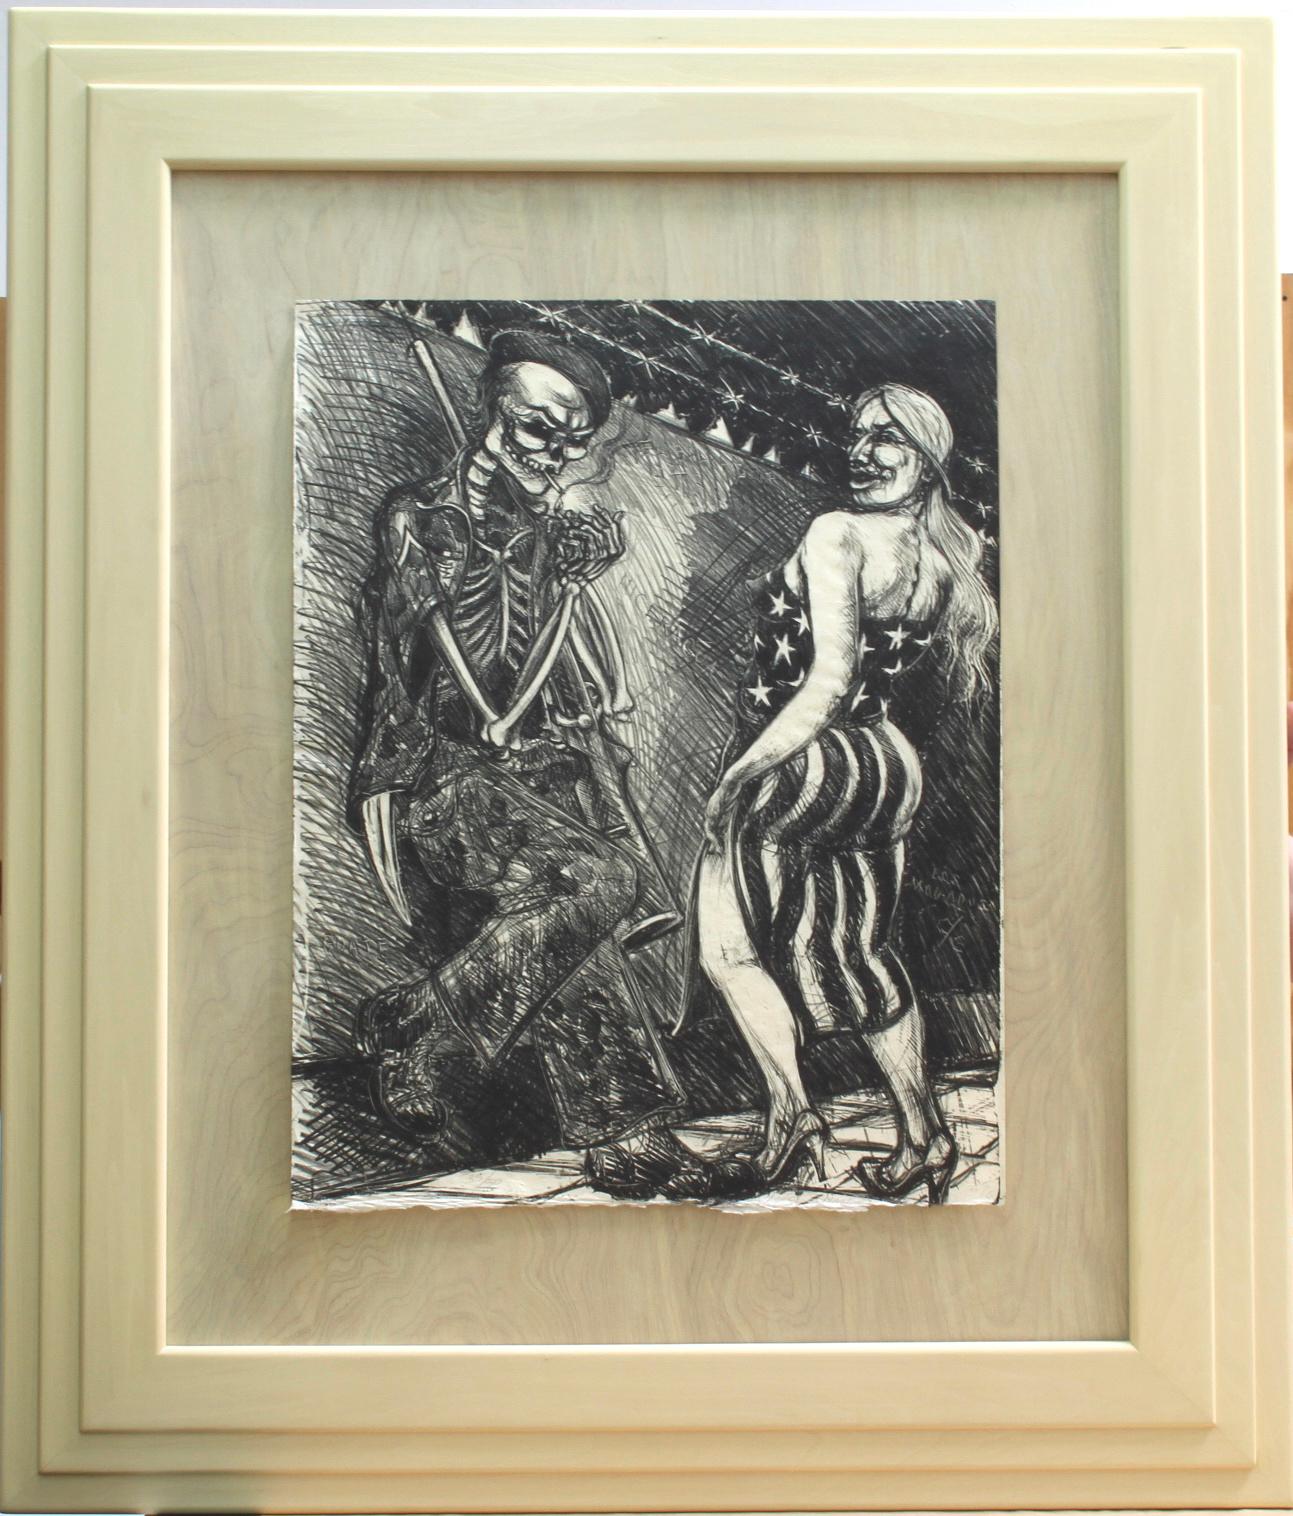 Luis Alfonso Jimenez Figurative Print - Coscolina Con Muerto (Flirt With Death)